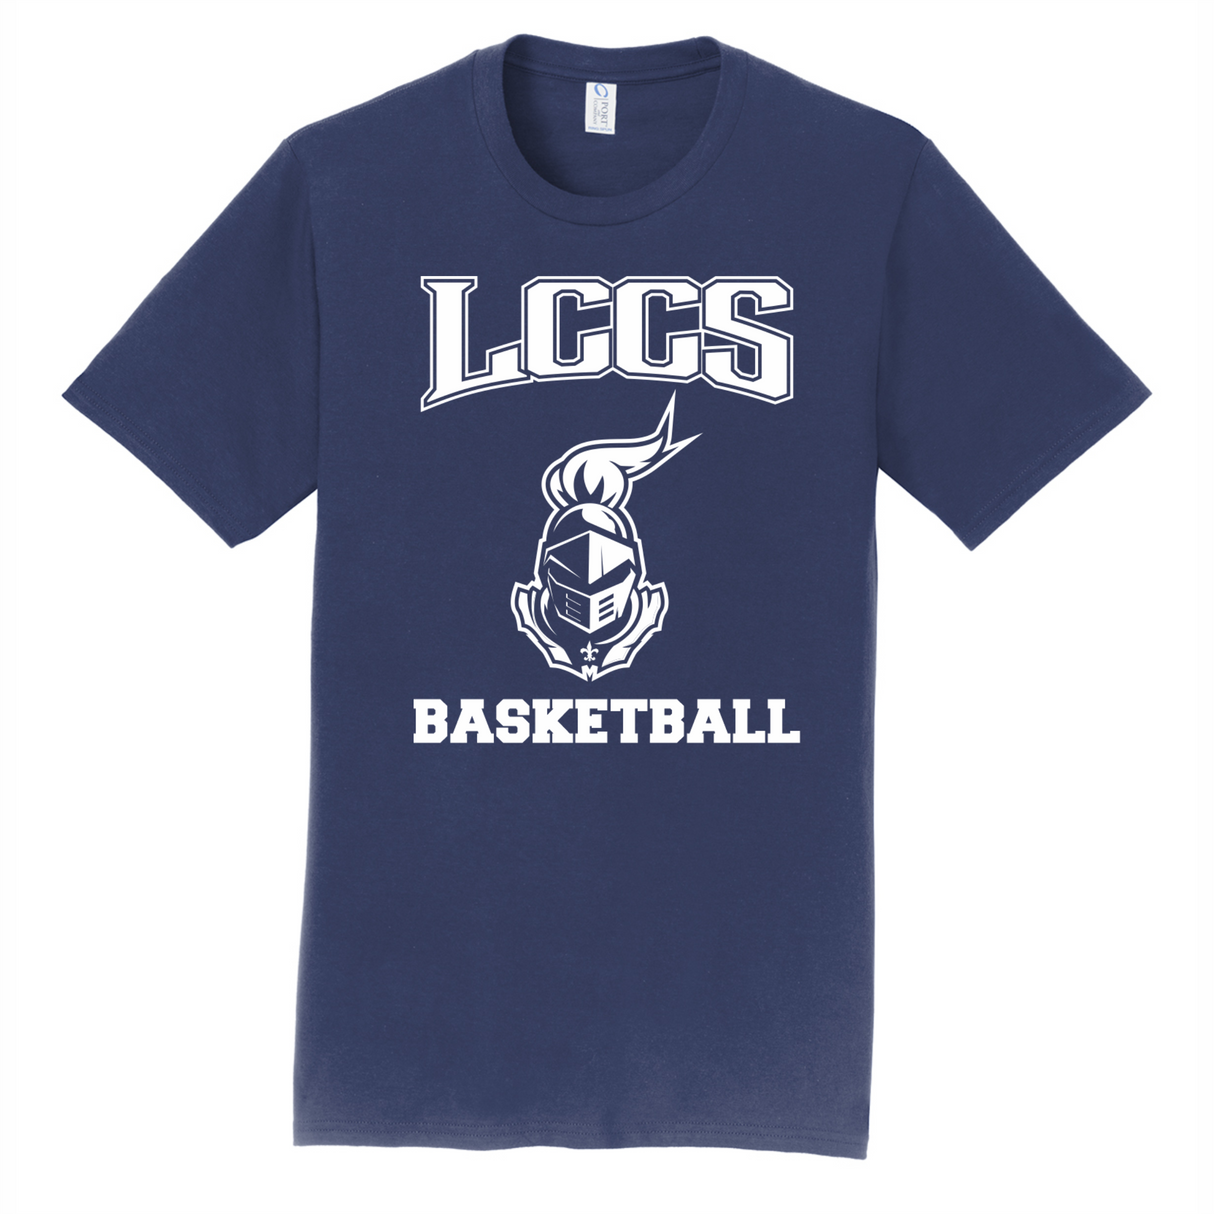 LCCS Basketball Cotton Tee